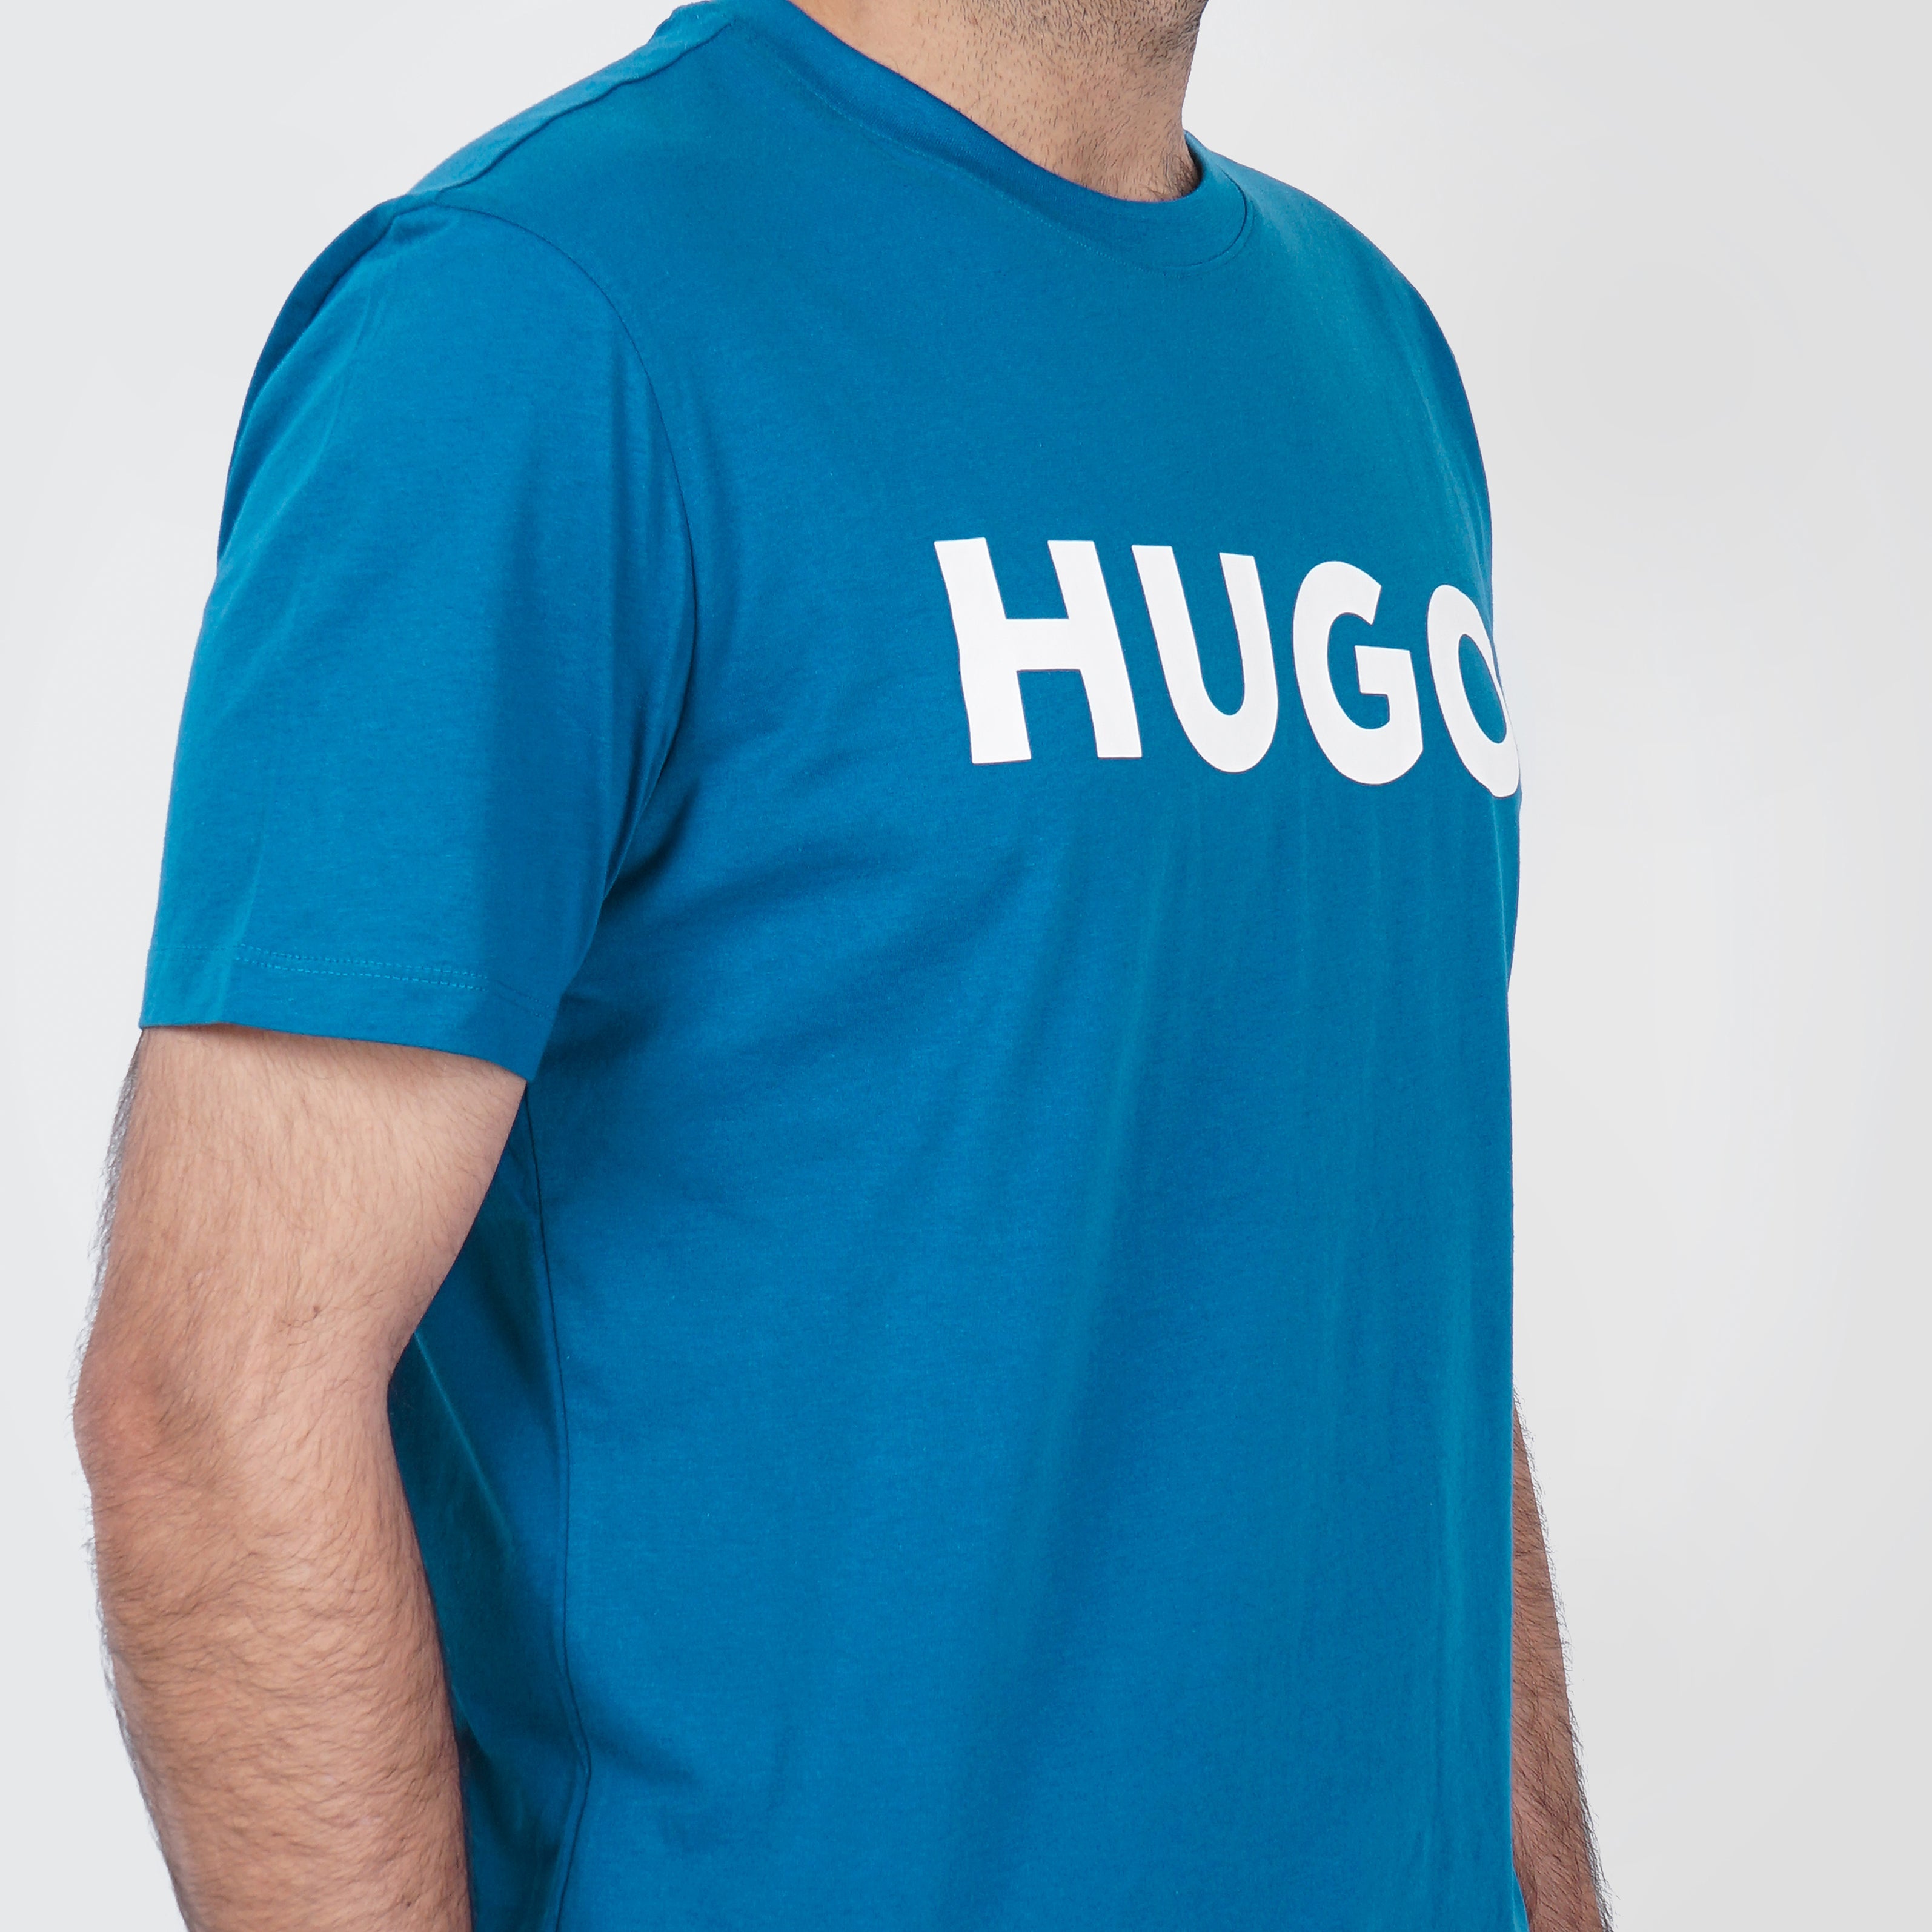 Original Hugo Boss logo Printed Tee - Marca Deals - Hugo Boss